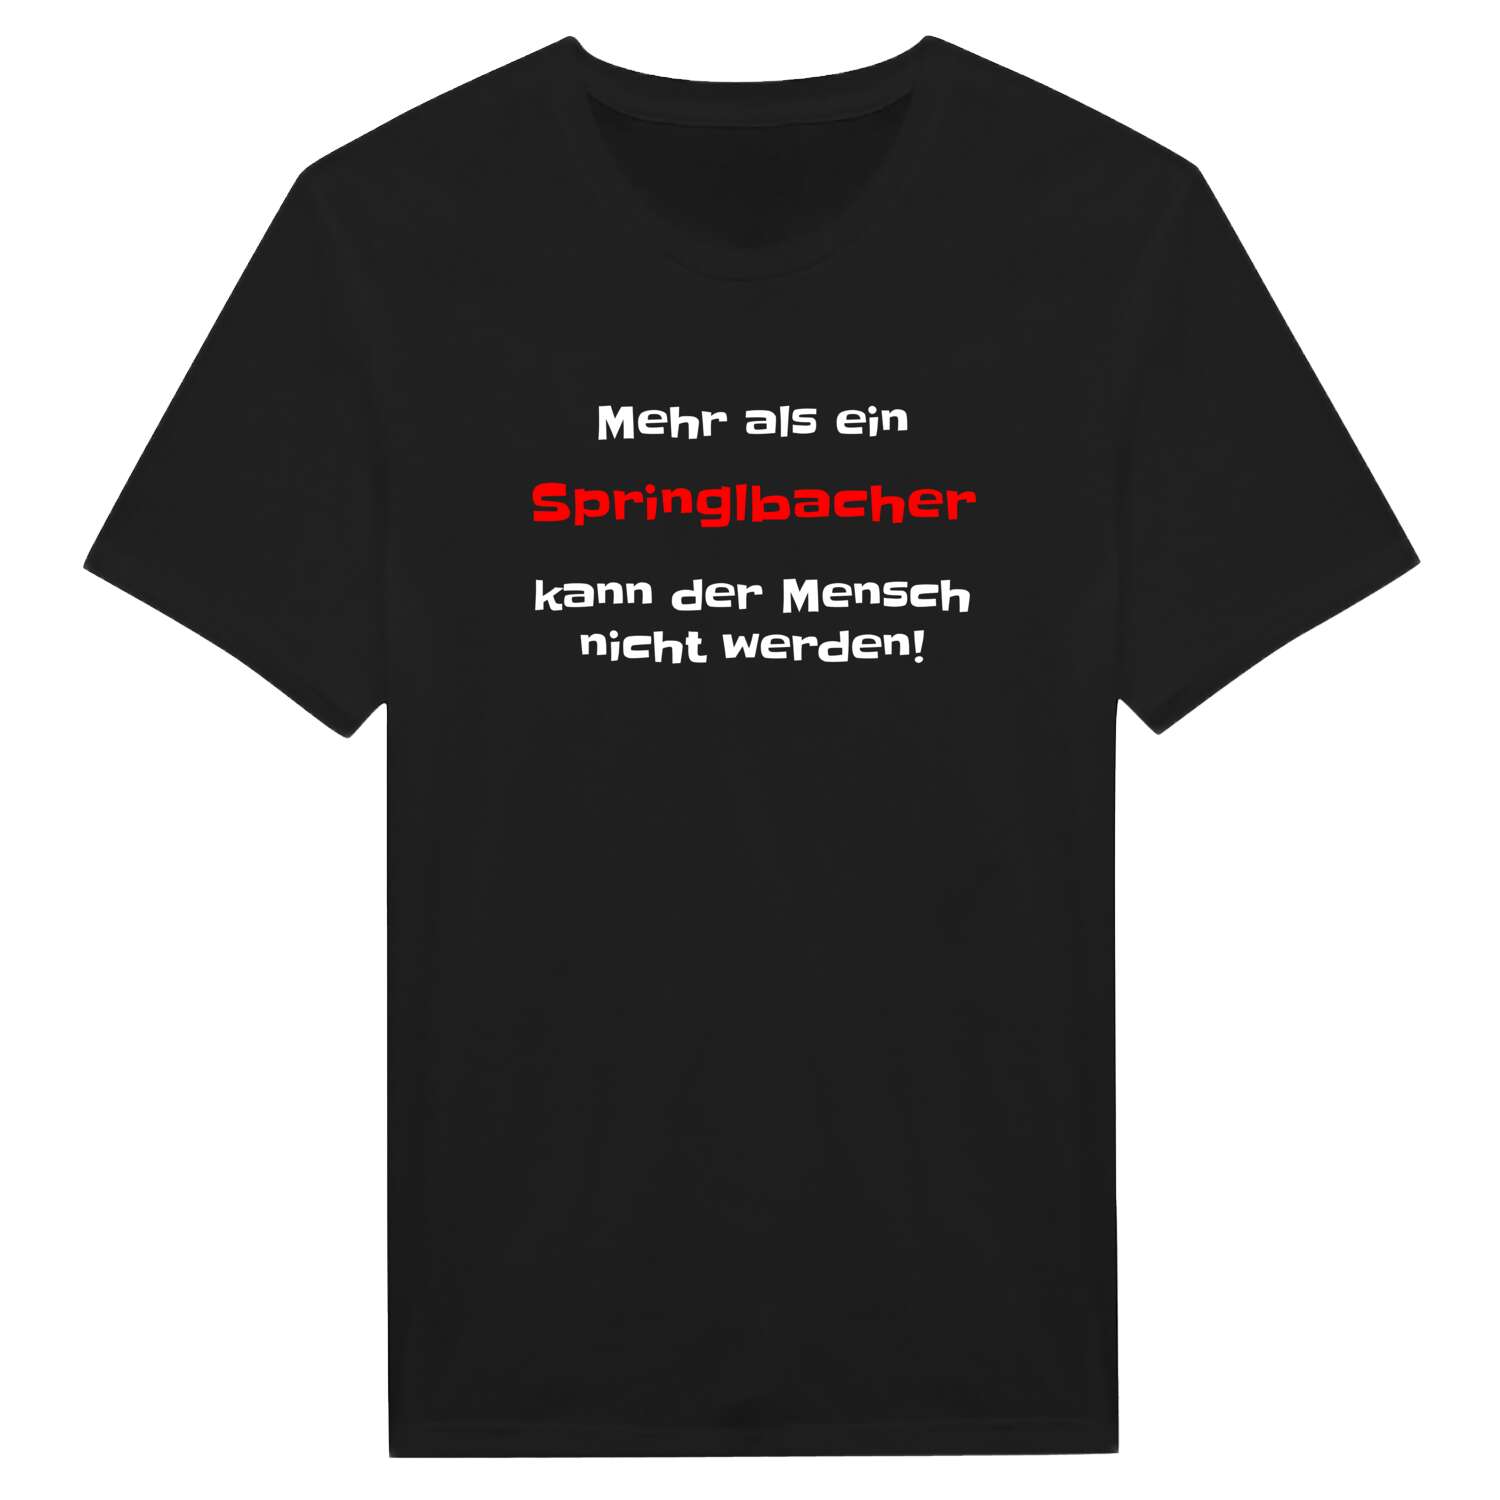 Springlbach T-Shirt »Mehr als ein«